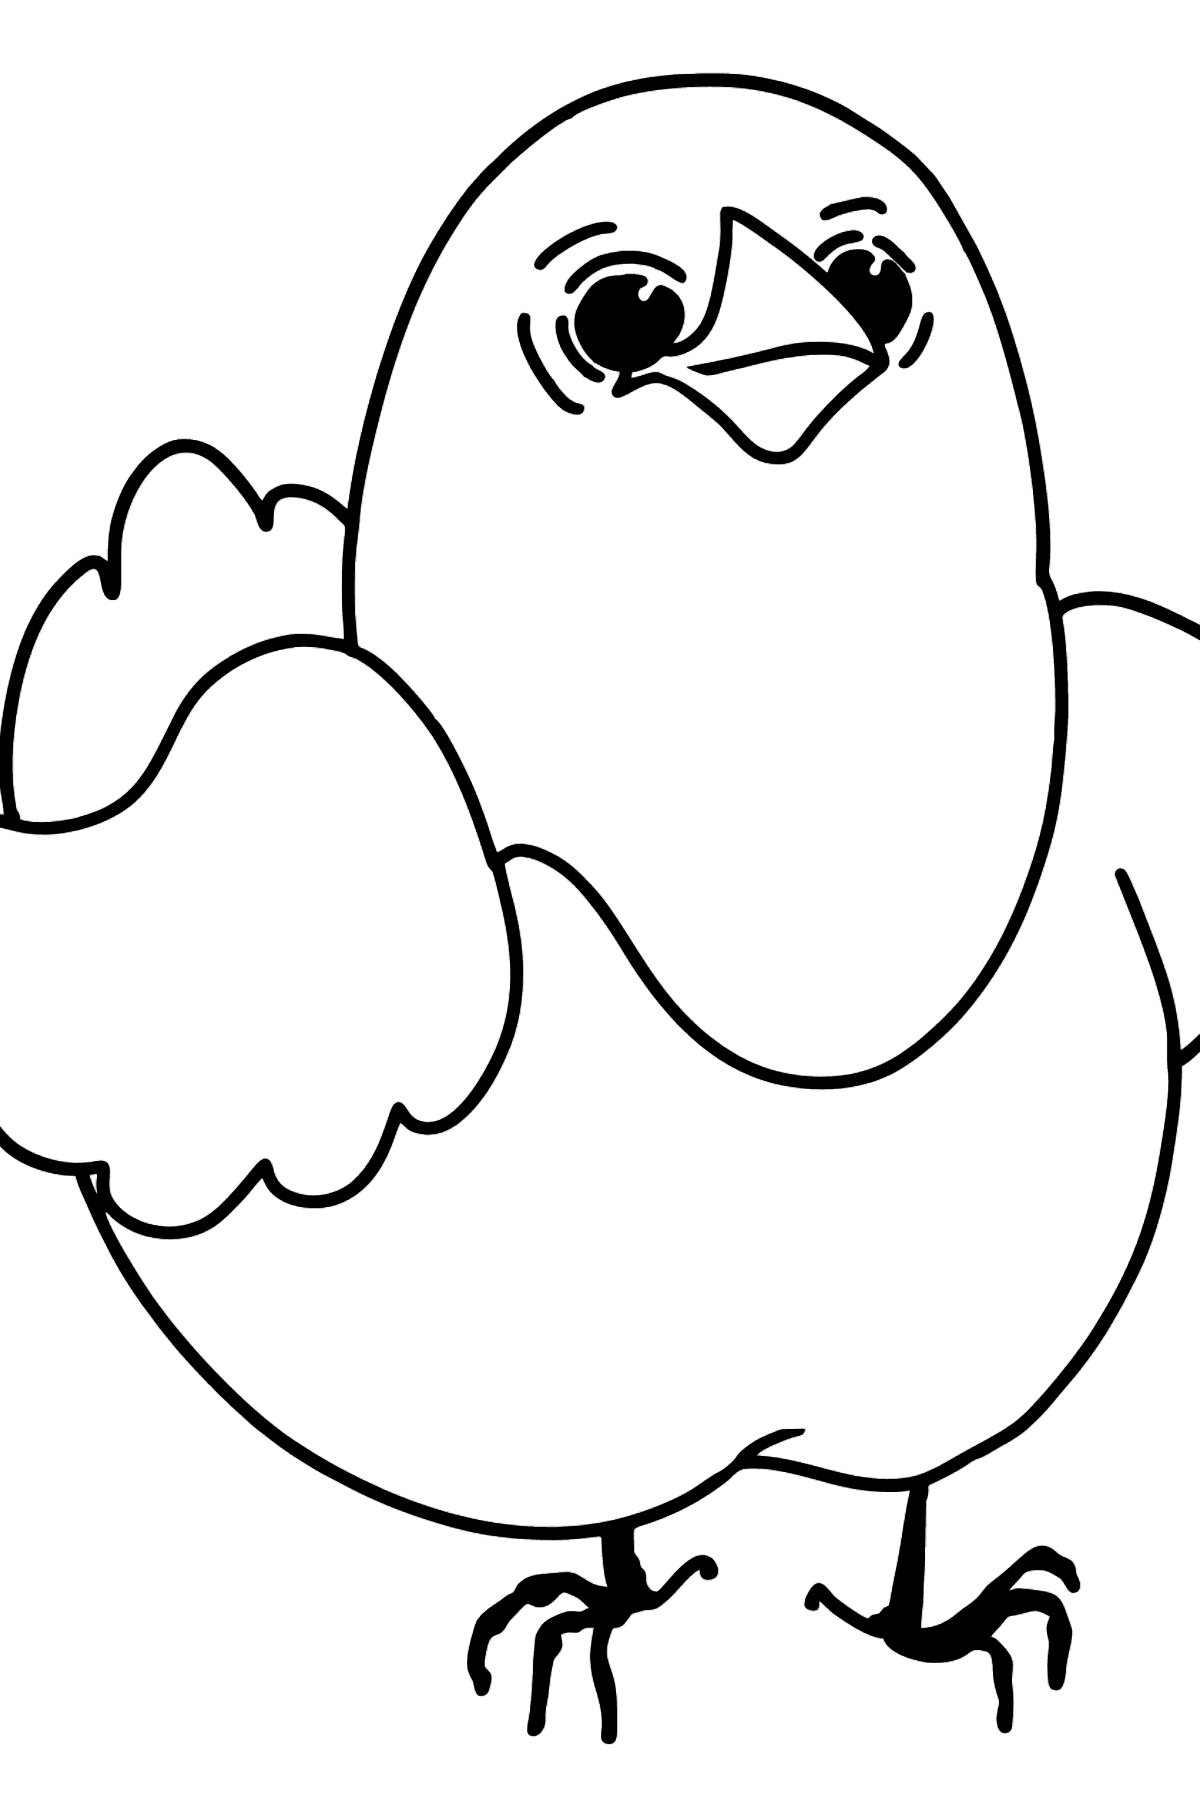 Desenho para colorir de frango - Imagens para Colorir para Crianças